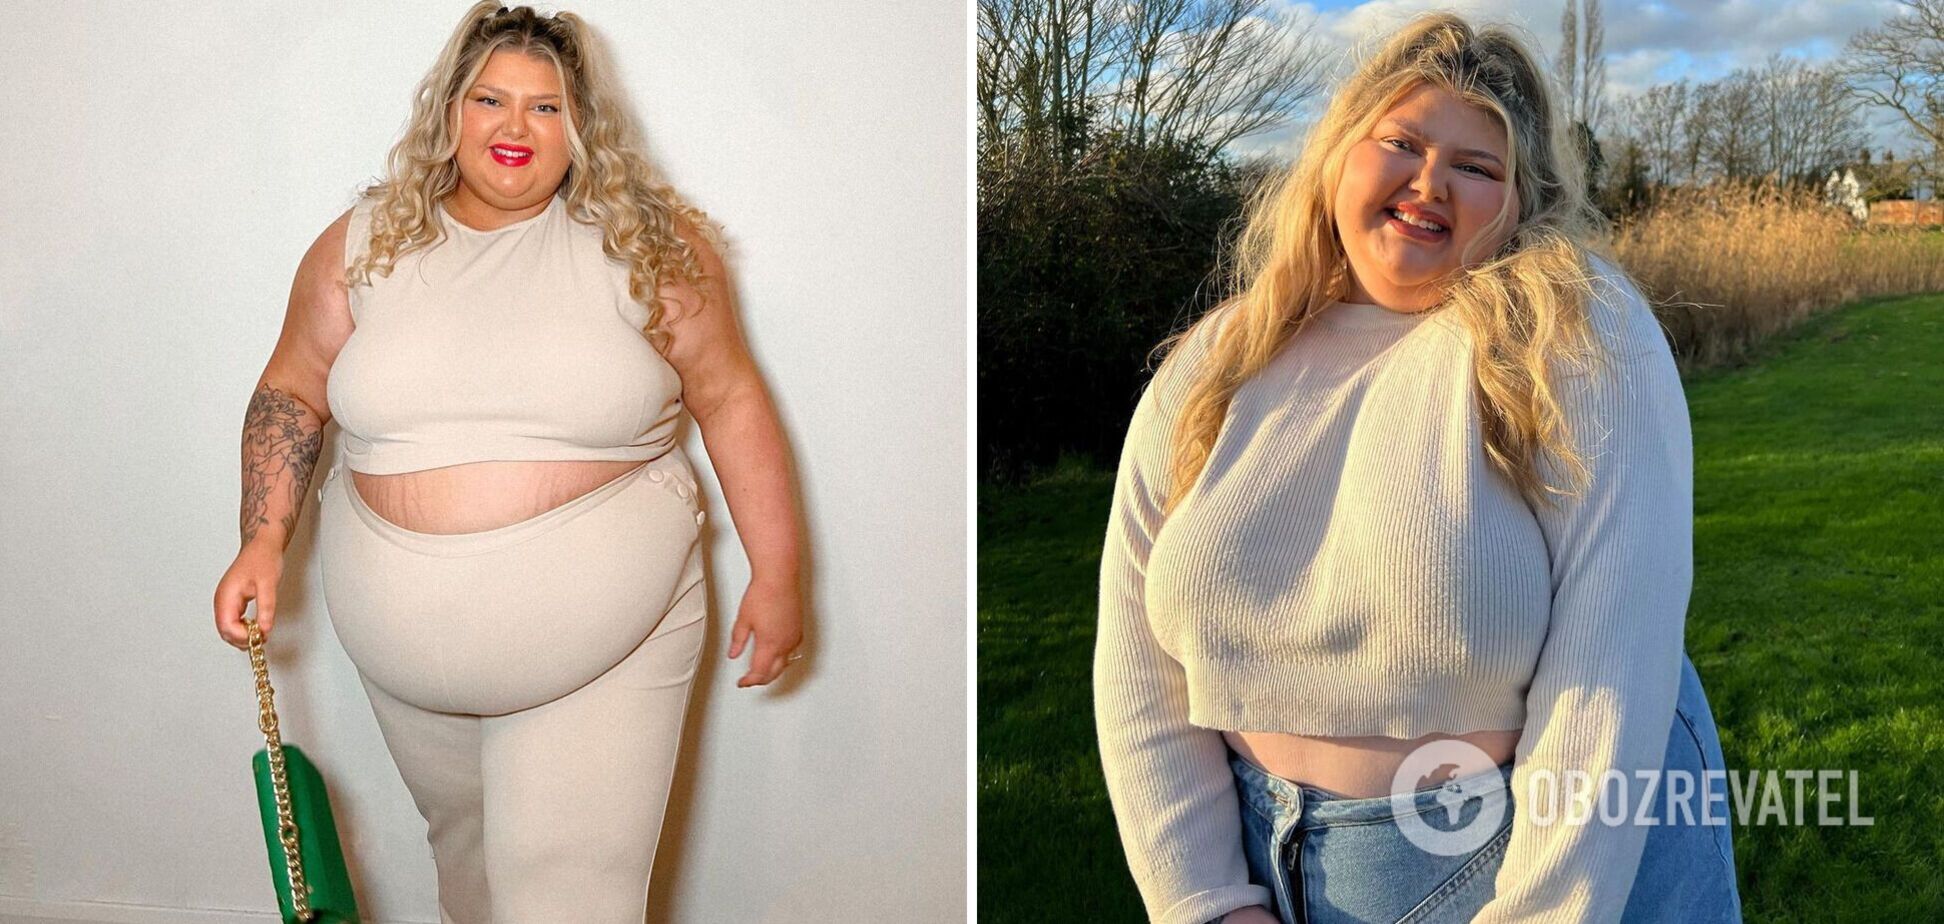 22-летняя 'Барби большого размера' бросила вызов хейтерам фото в откровенной одежде